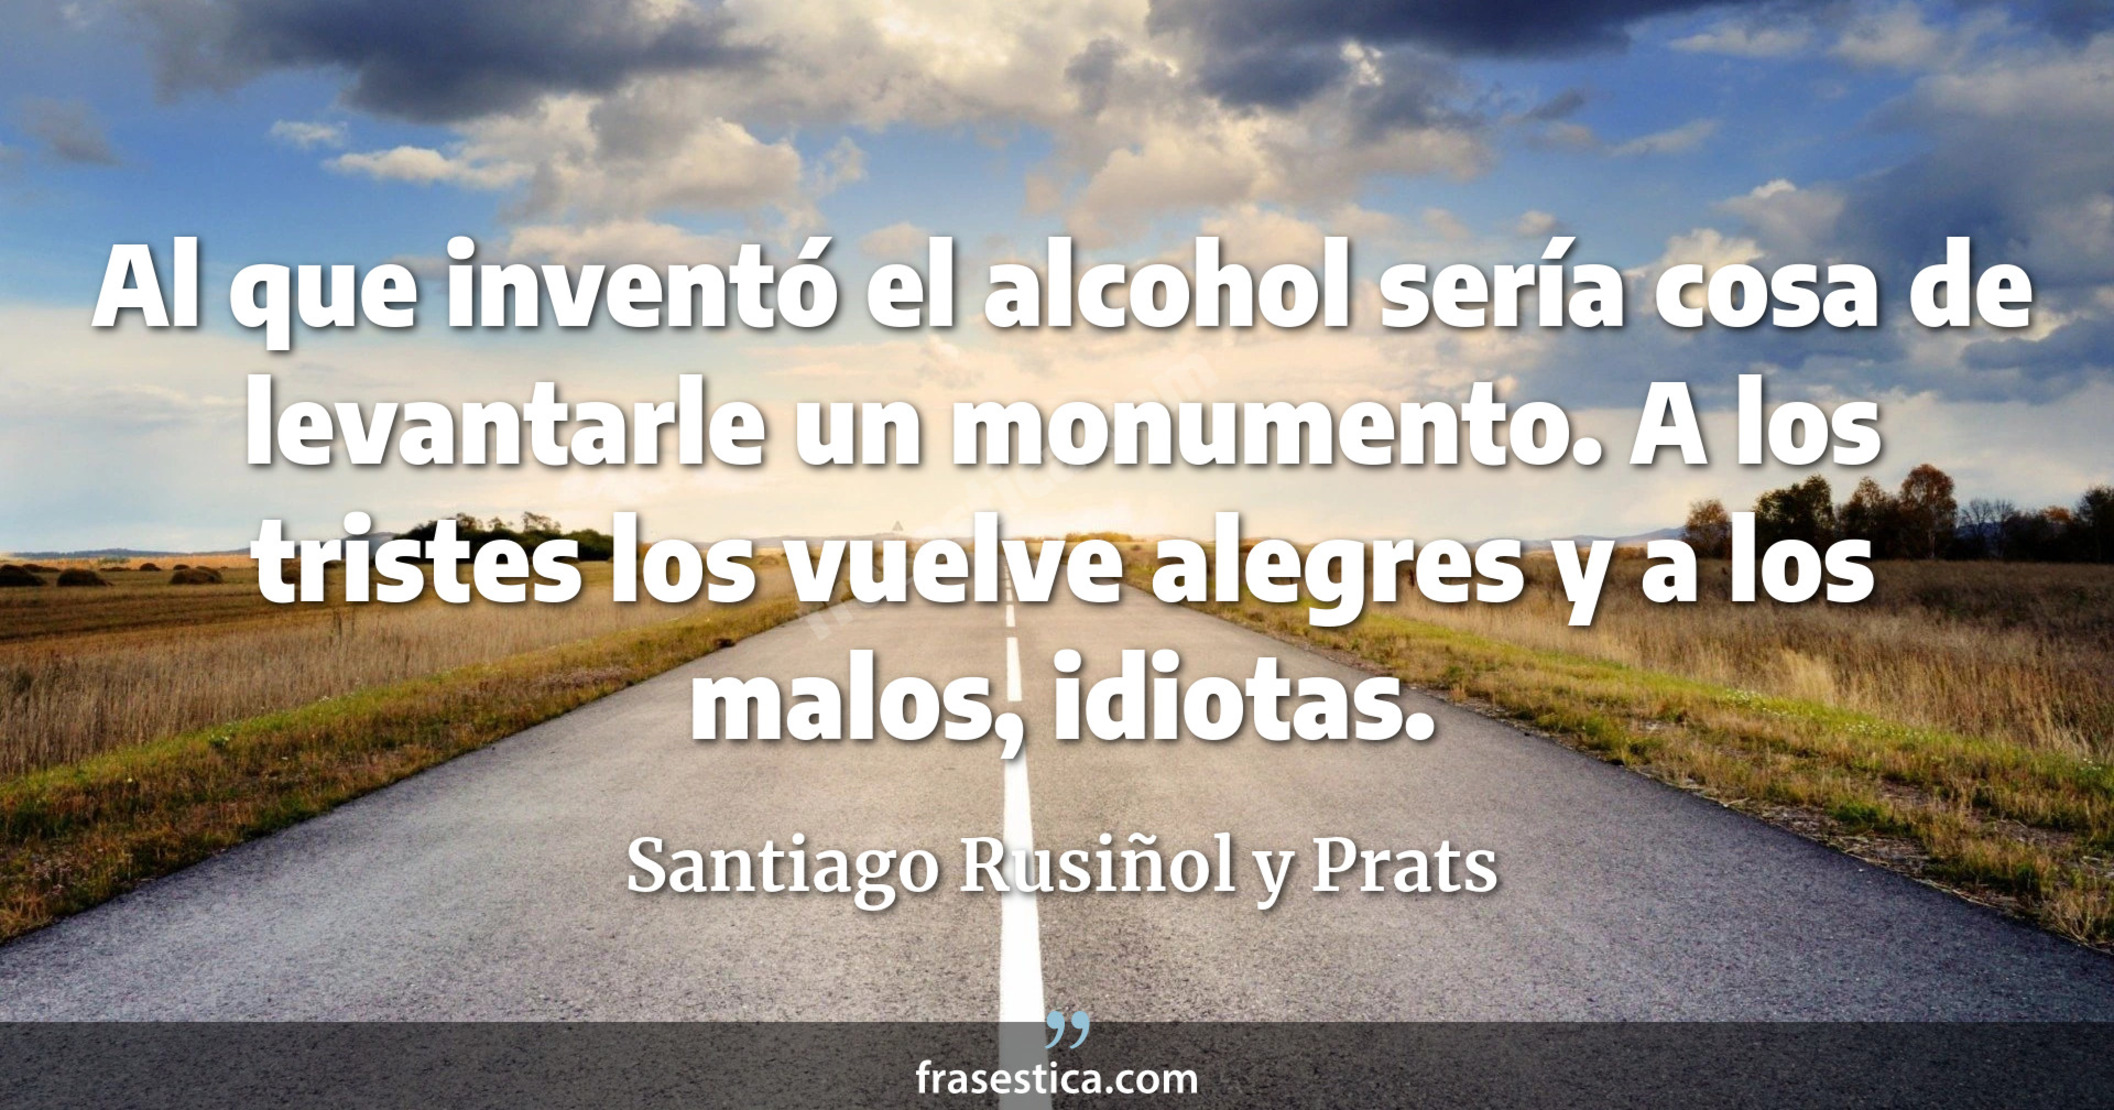 Al que inventó el alcohol sería cosa de levantarle un monumento. A los tristes los vuelve alegres y a los malos, idiotas. - Santiago Rusiñol y Prats